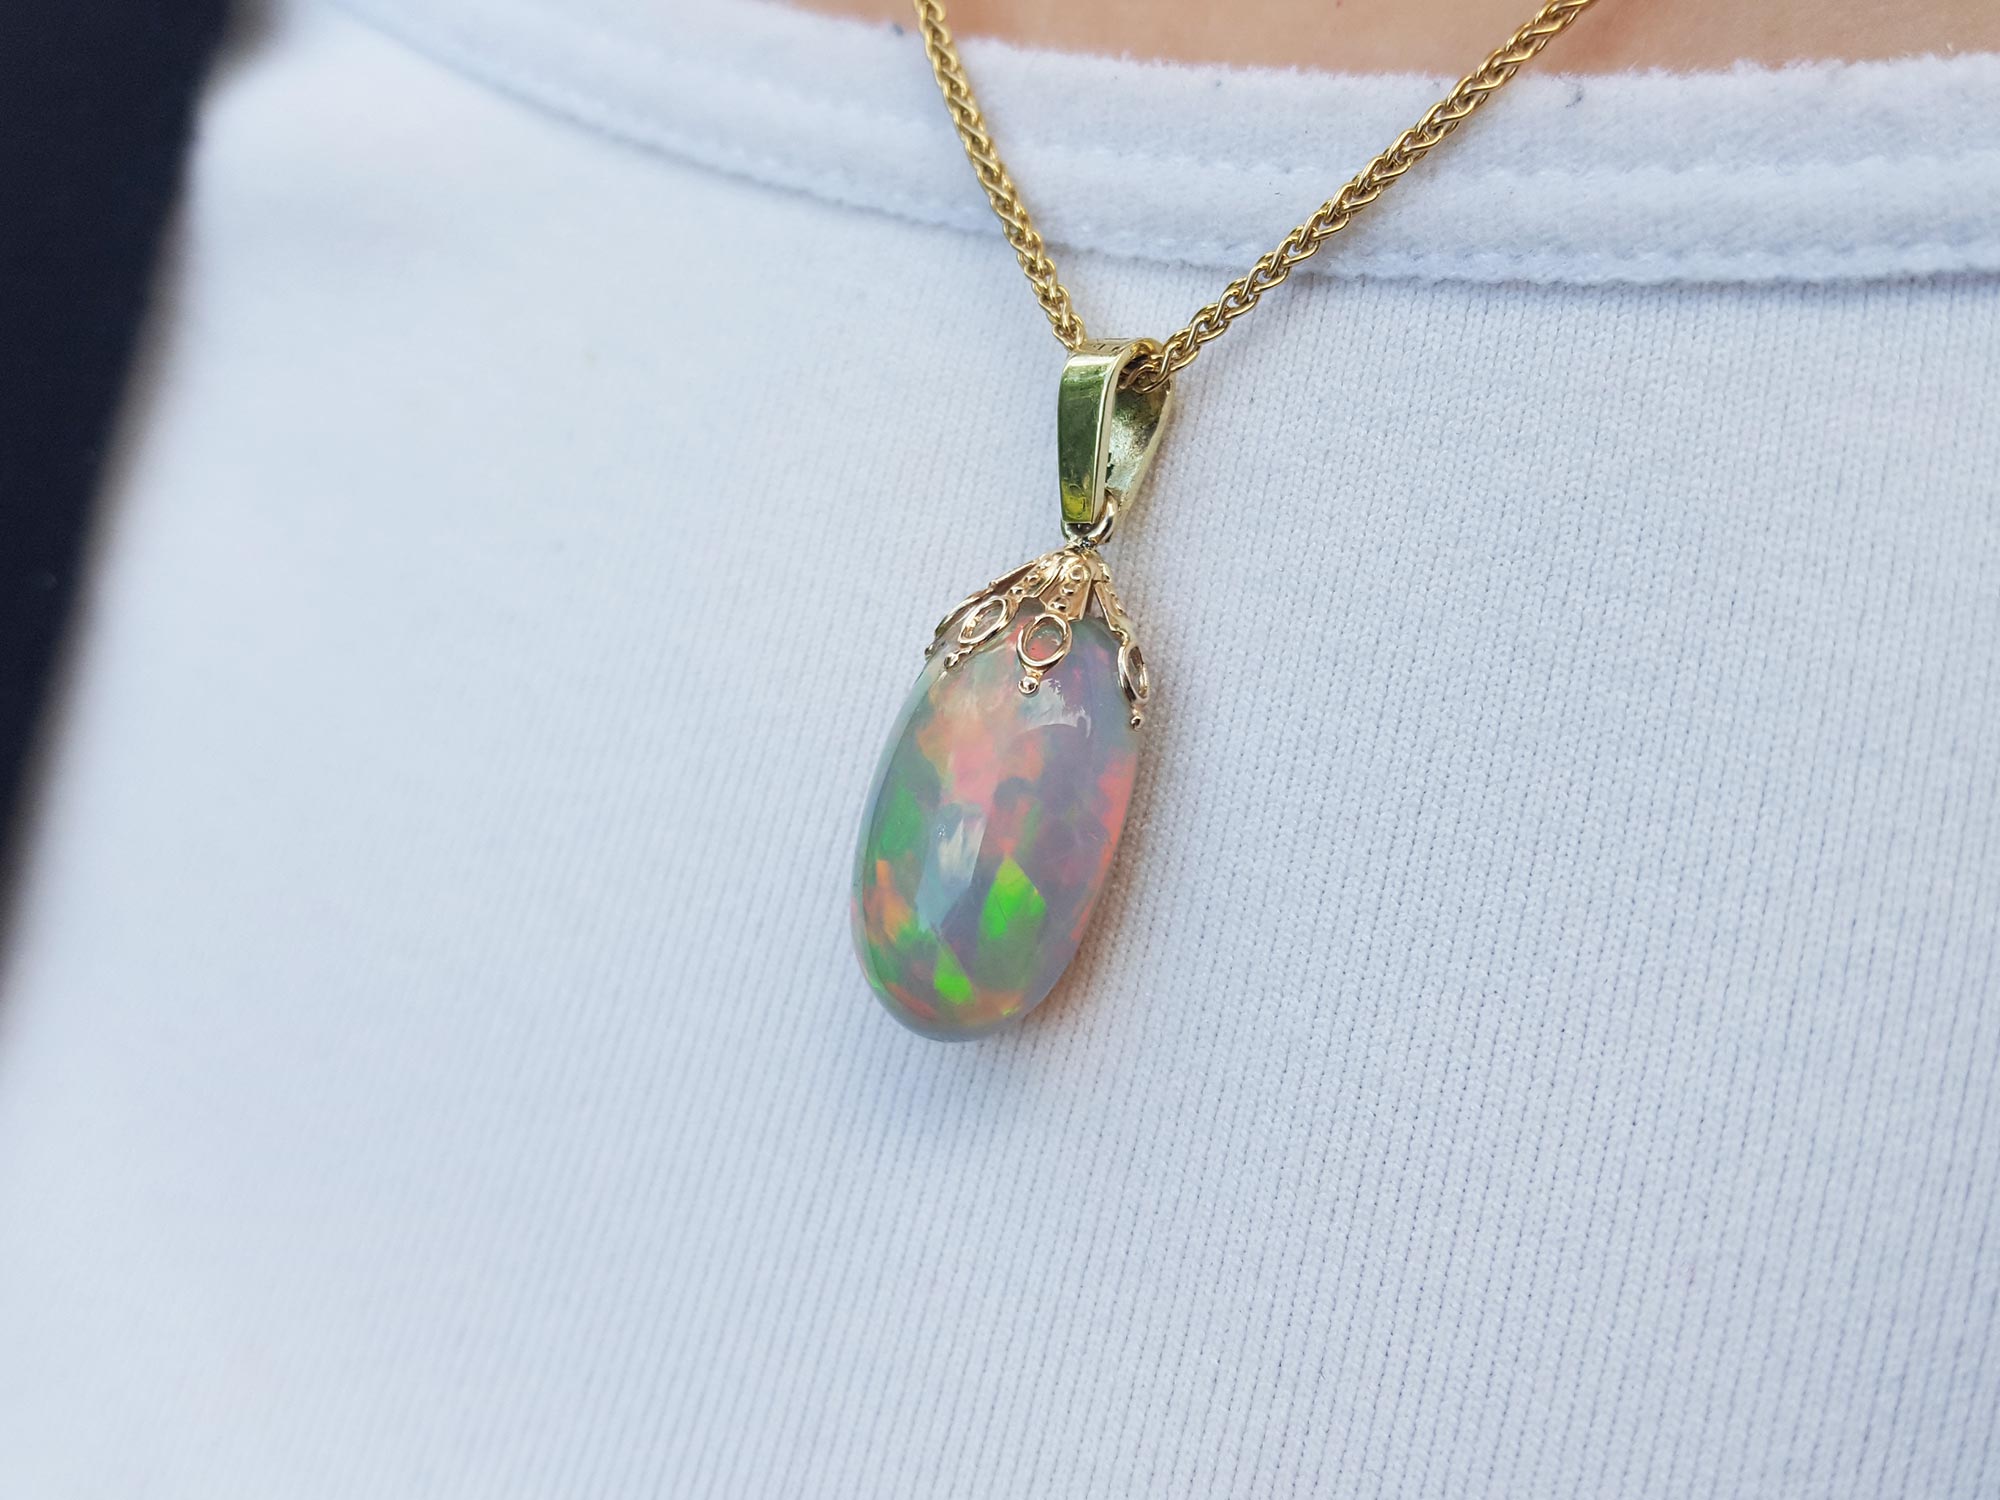 Opal cabochon pendant necklace